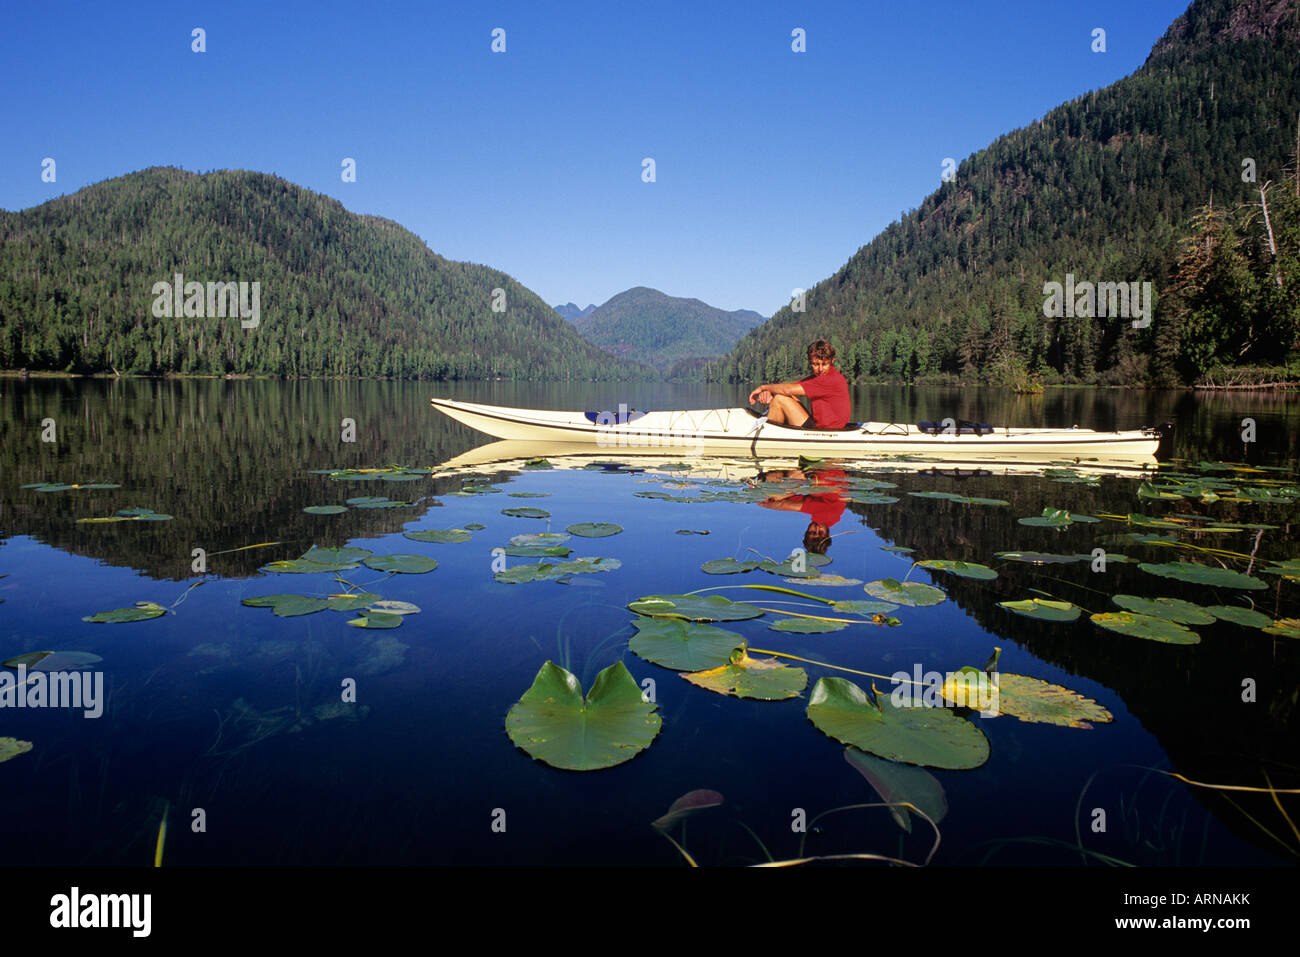 Reserva de Biosfera Megin Clayoquot, Lago, kayakista y nenúfares, Isla de Vancouver, British Columbia, Canadá. Foto de stock